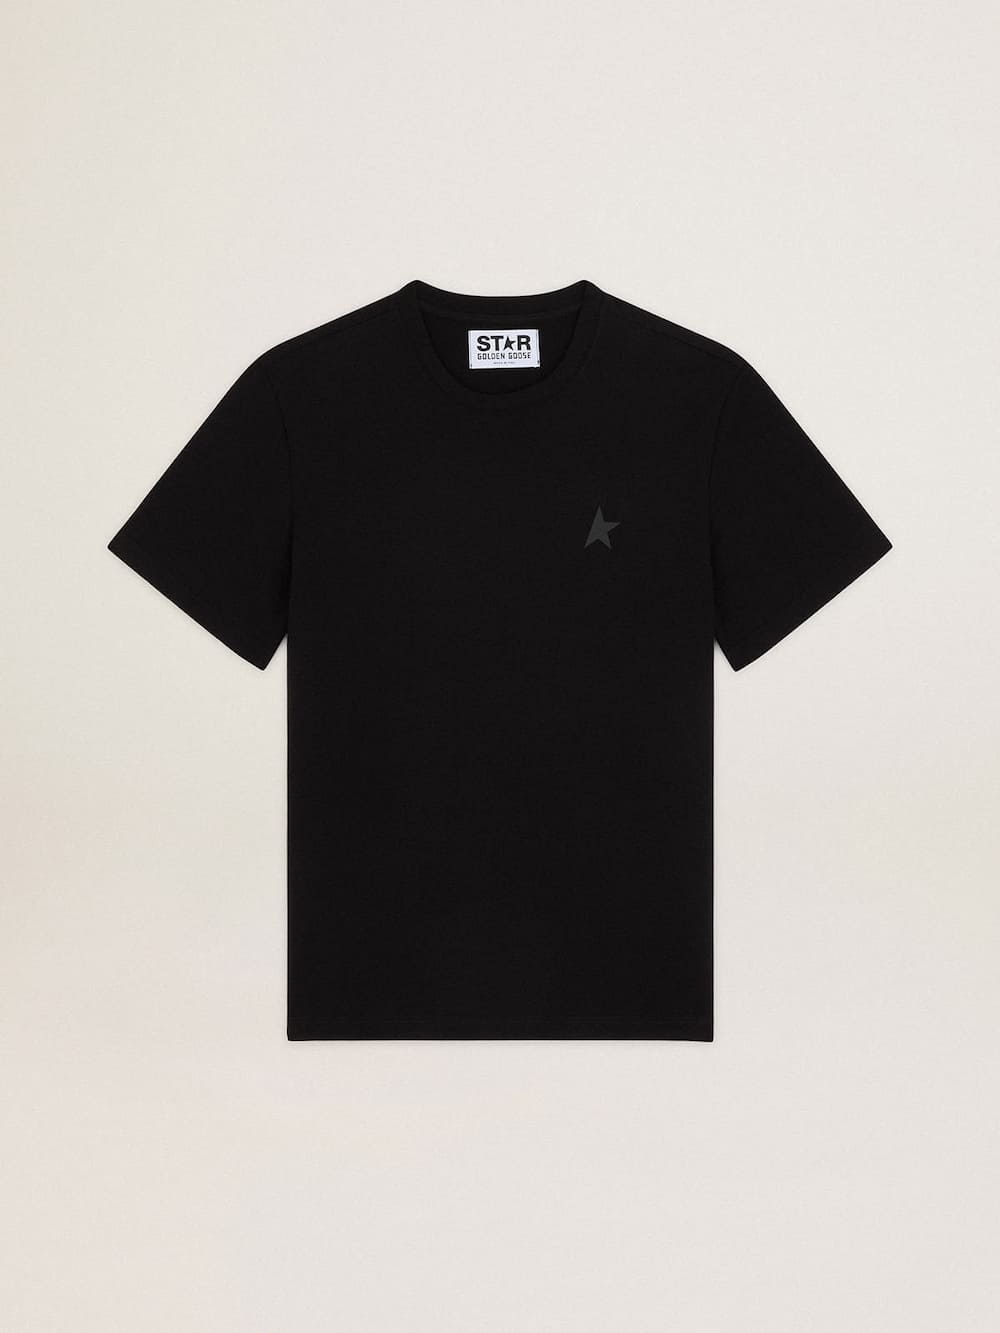 Golden Goose - T-shirt noir collection Star avec étoile ton sur ton sur le devant in 